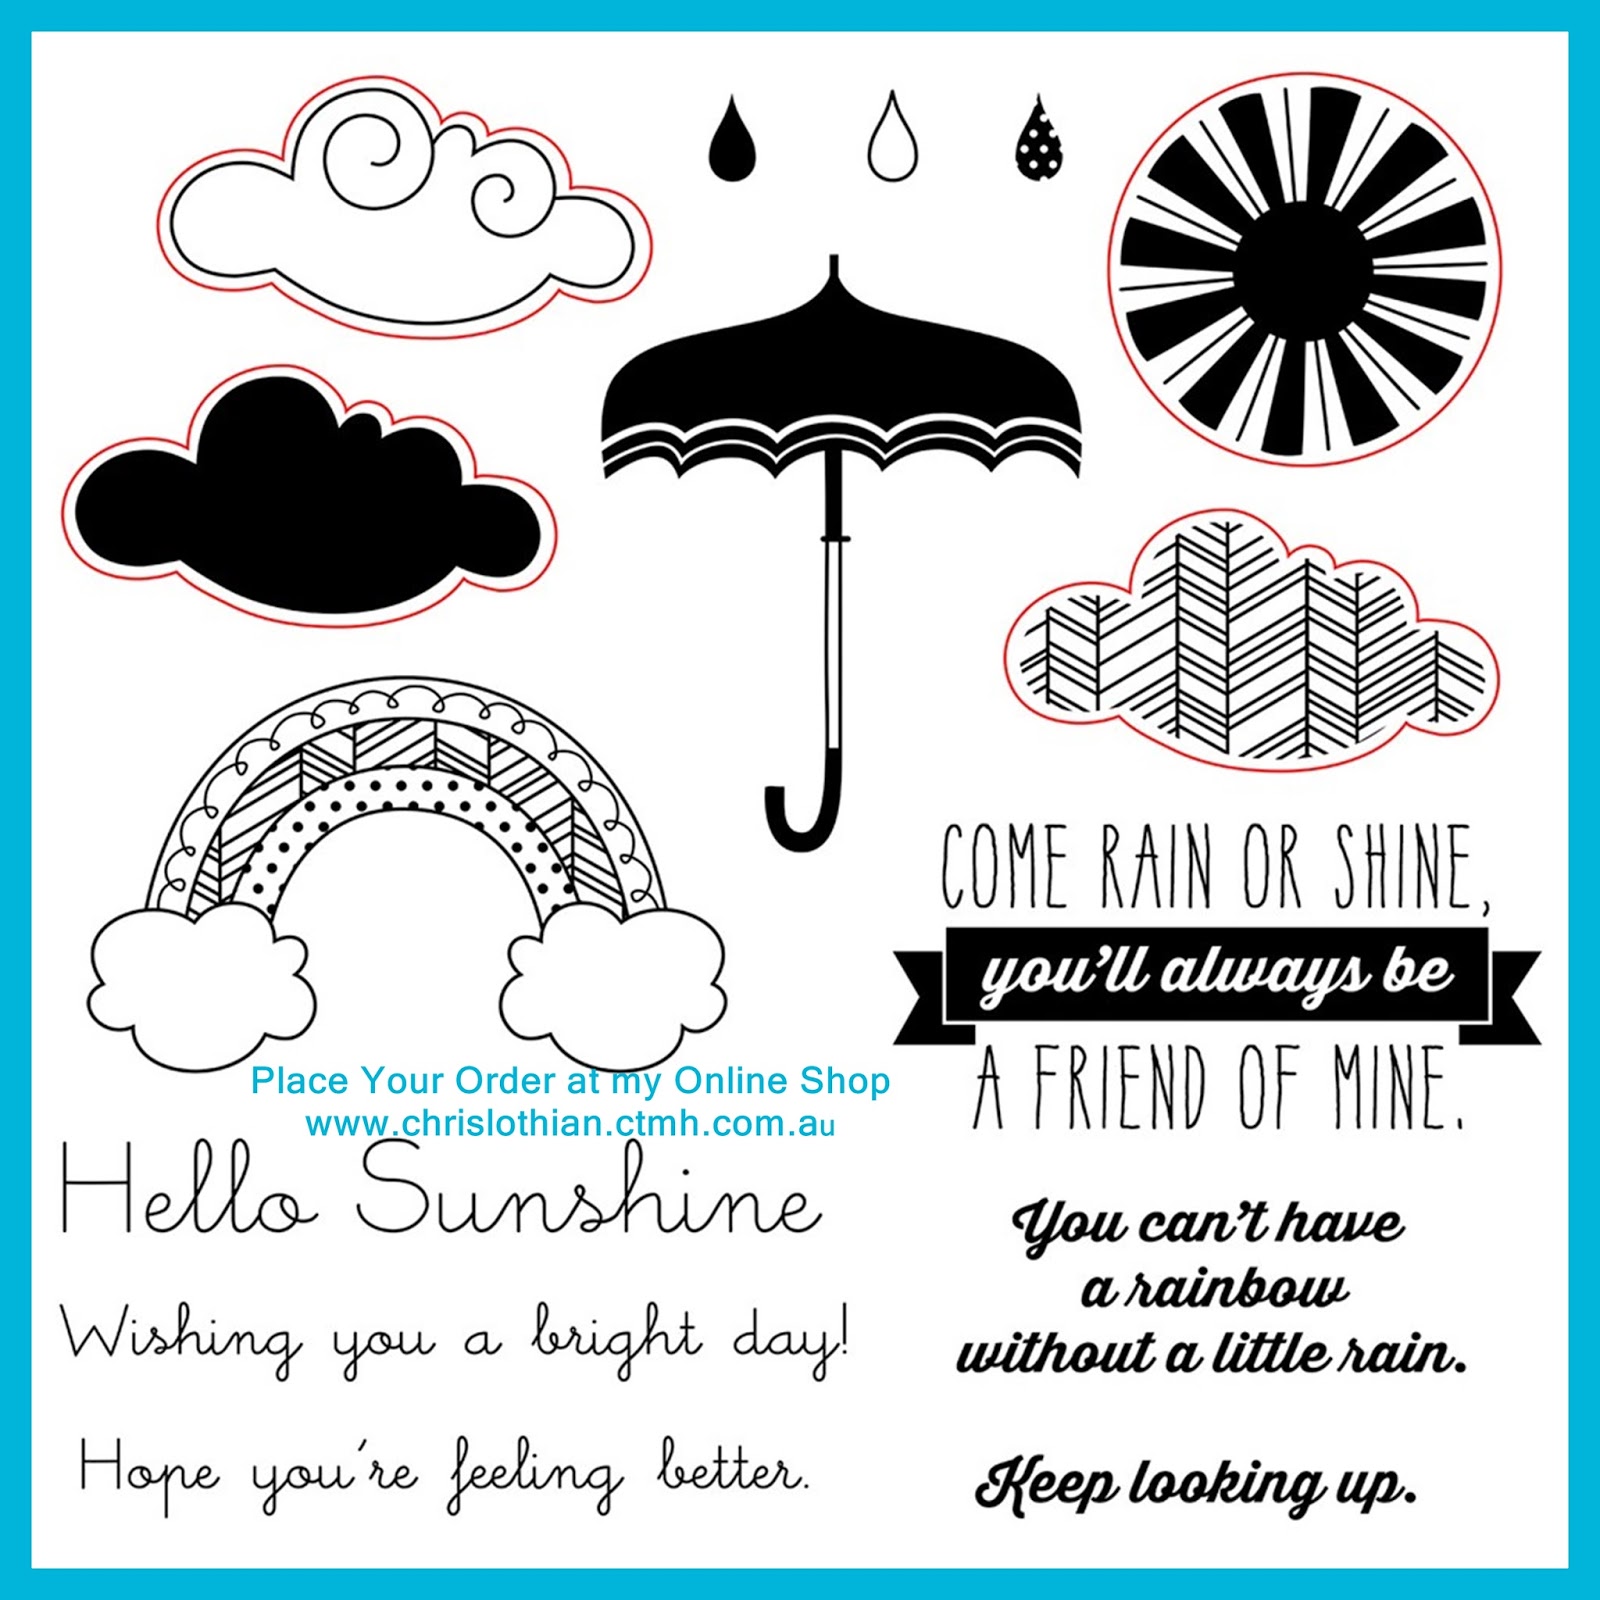 Rain or shine. Come Rain or Shine. Come Rain or Shine иллюстрация. Rain or Shine стихотворение.